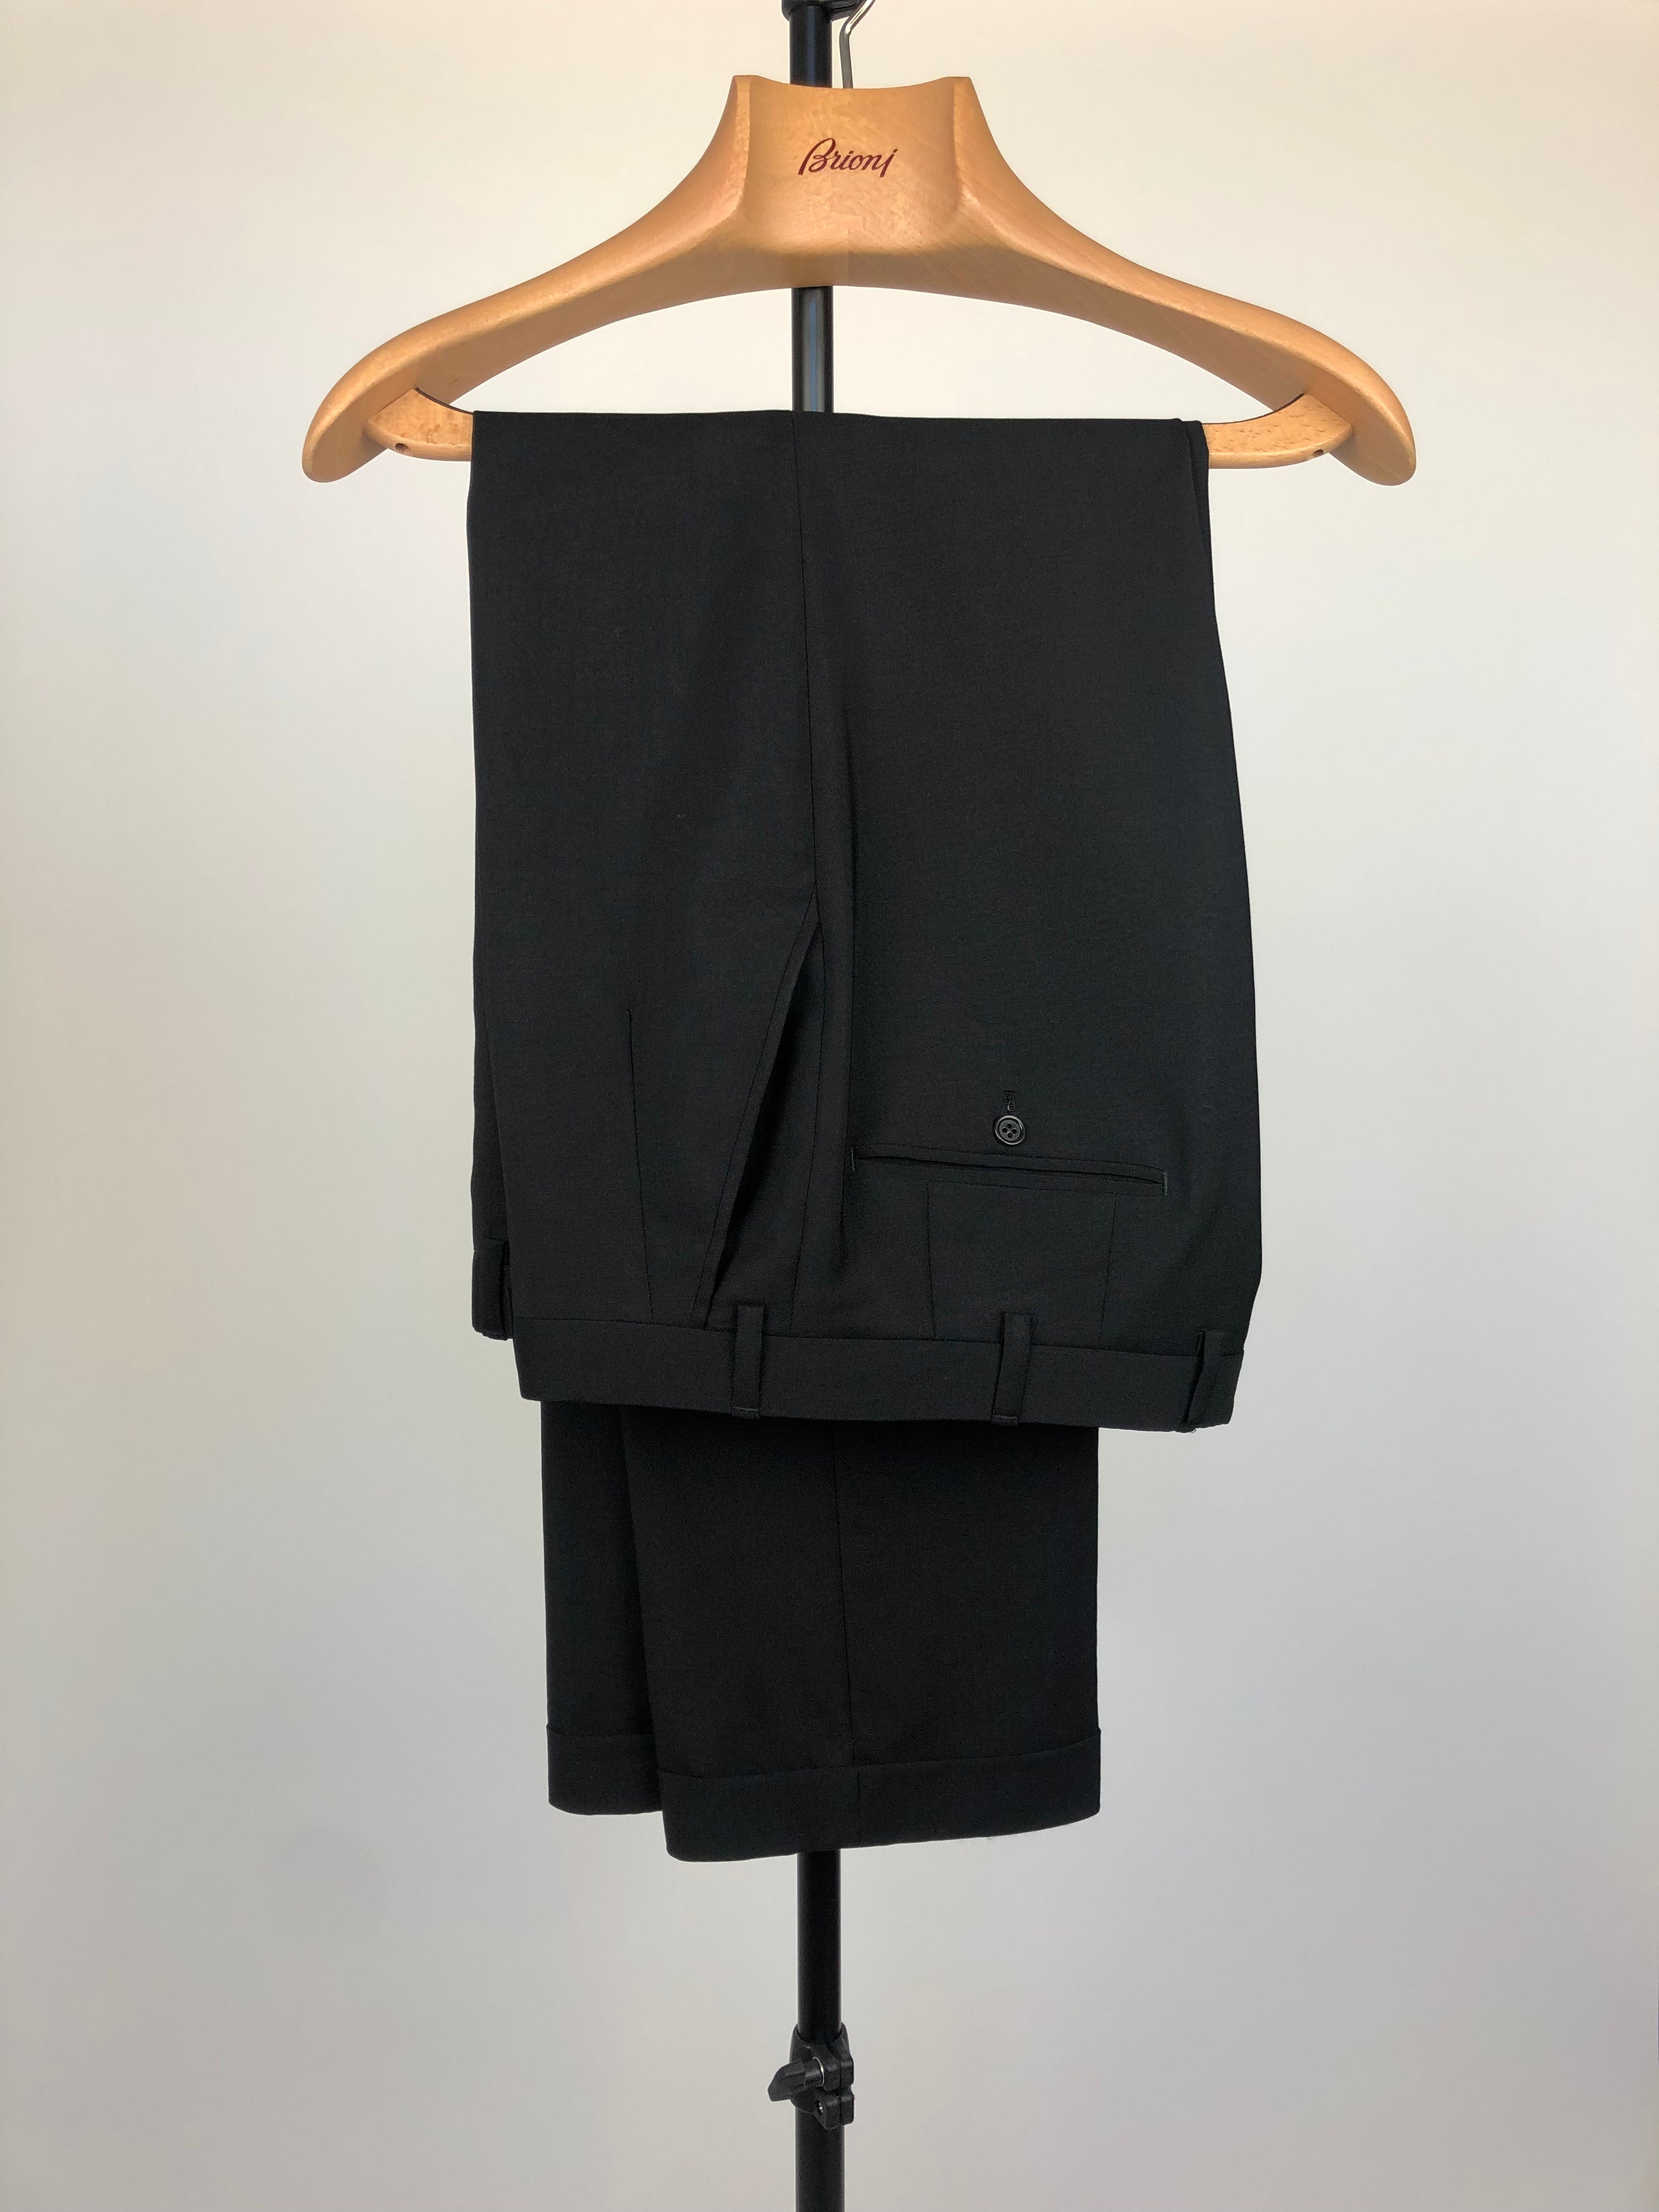 Brioni Black Mohair Blend Suit